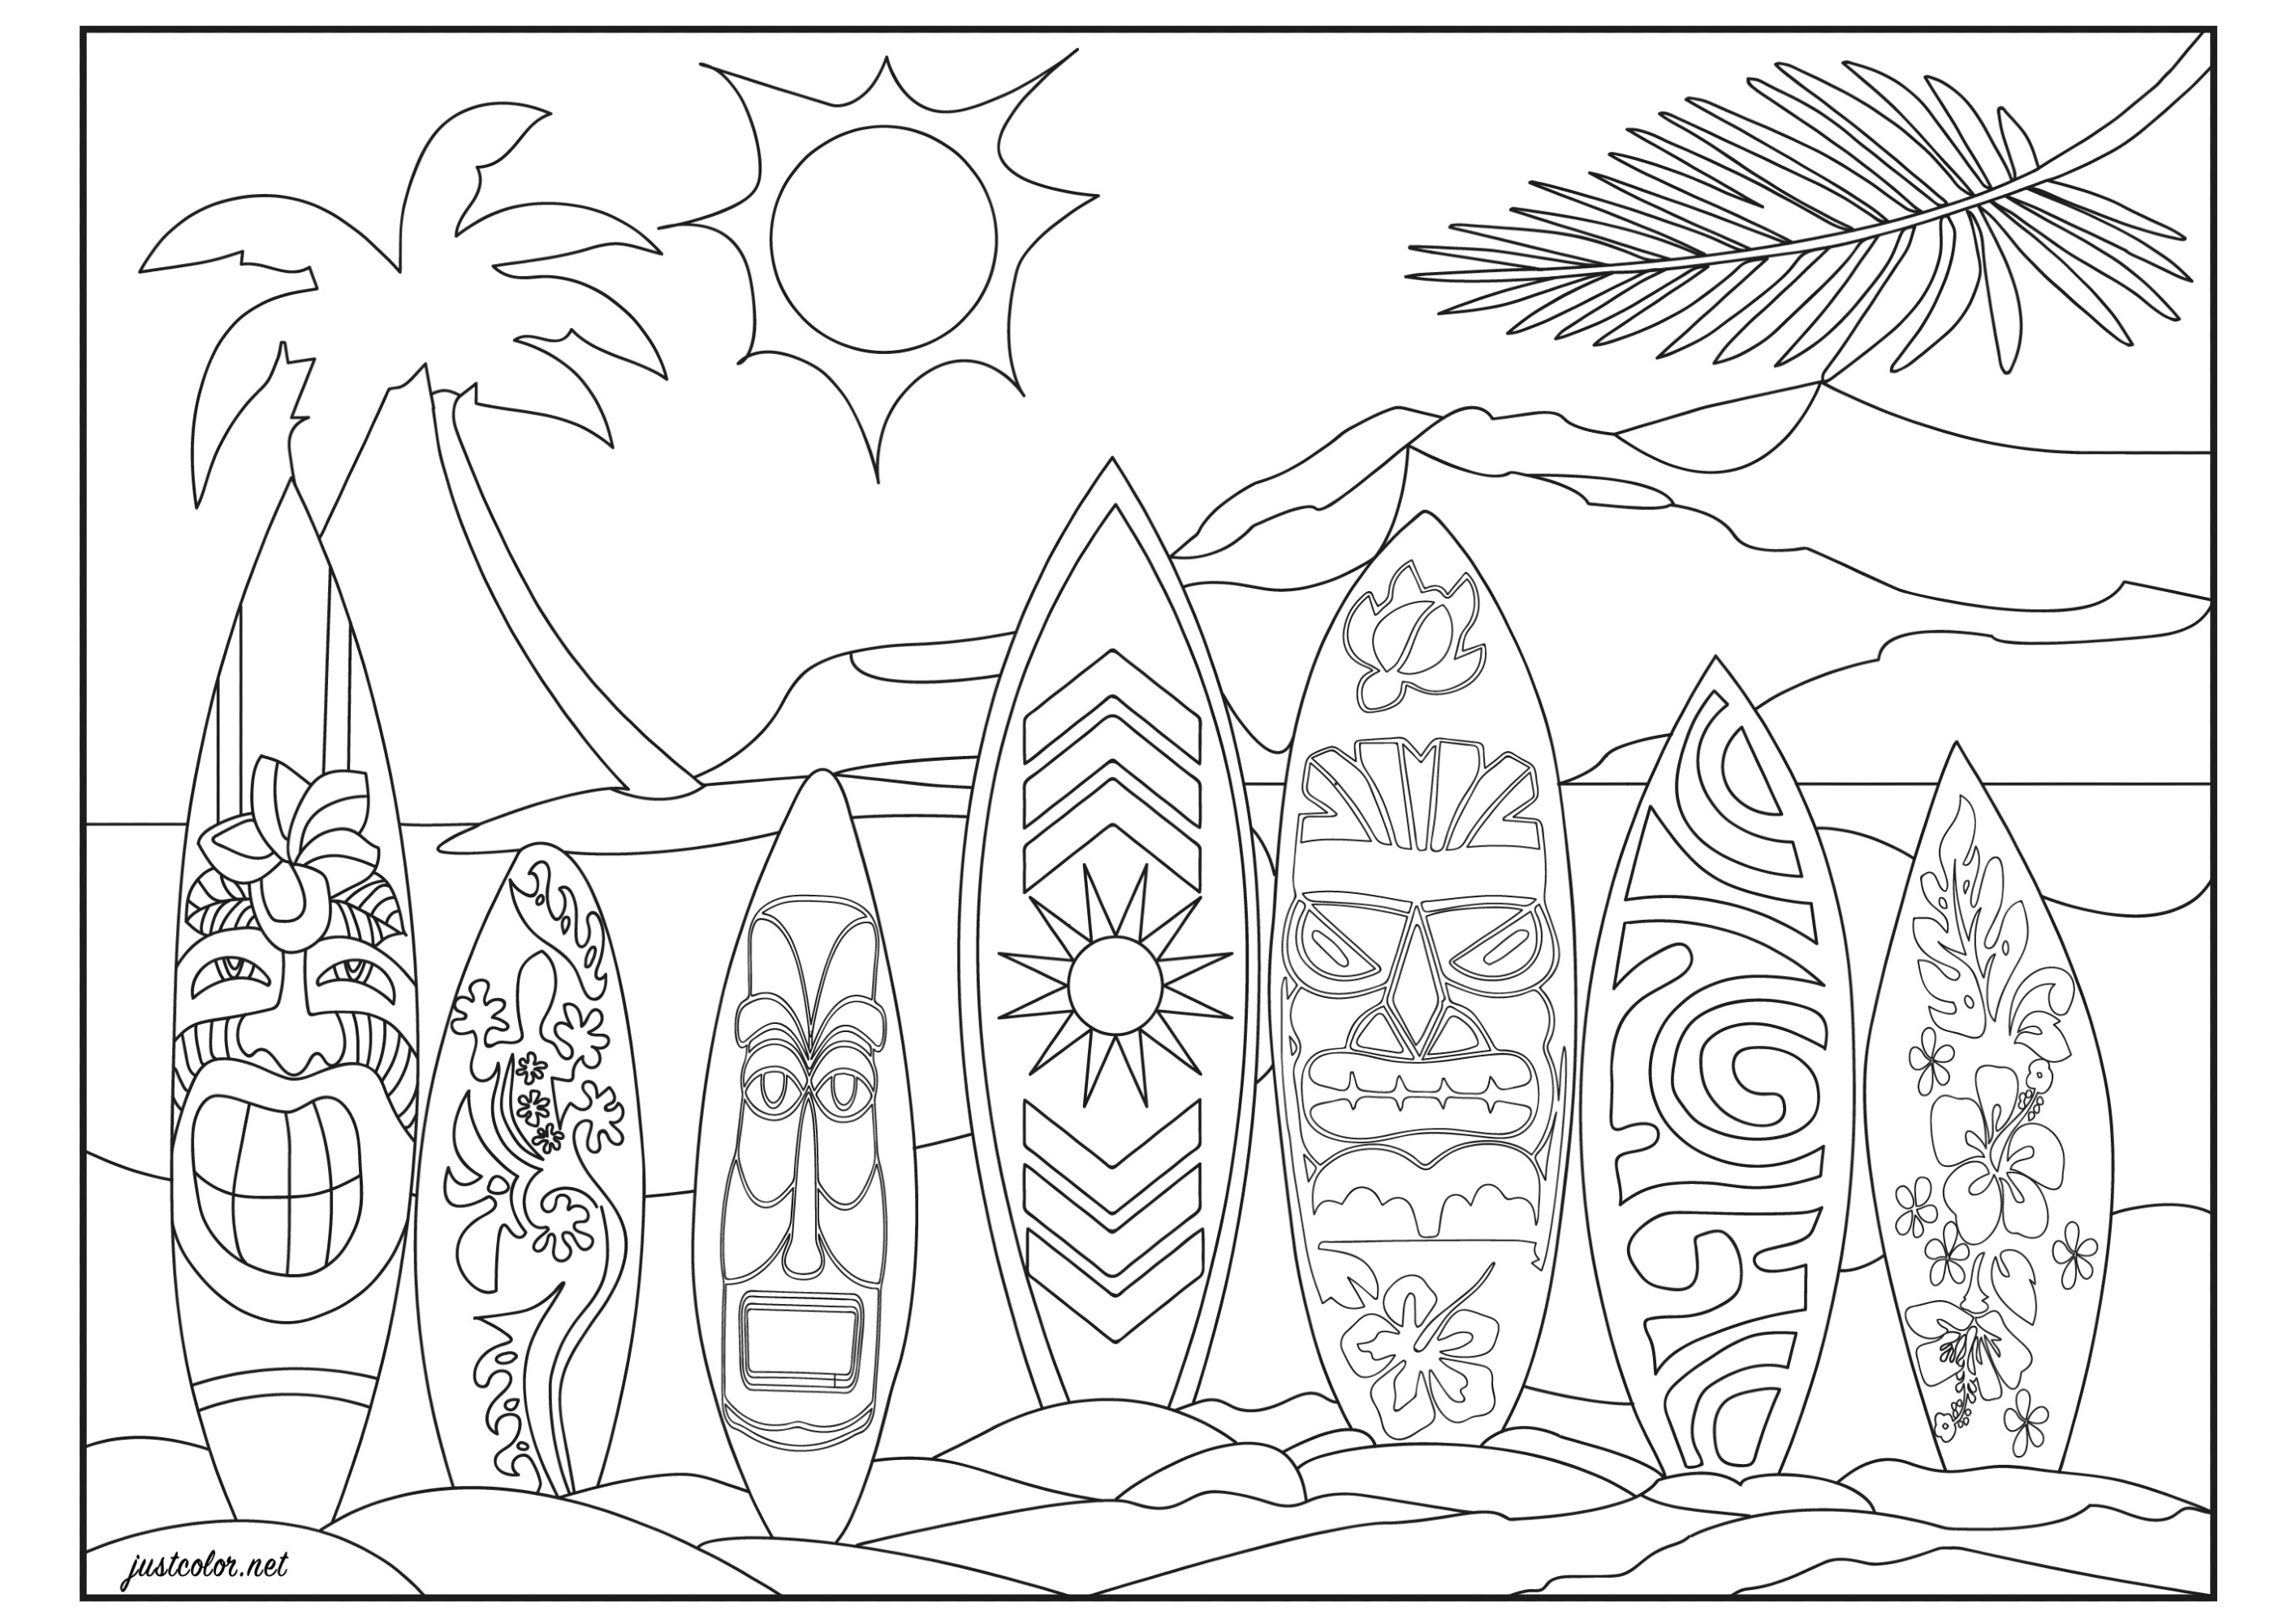 Hawai en el Pacífico, en una playa de Honolulu : alineación de tablas de surf con motivos hawaianos, maoríes, vintage, tribales y florales (flores tropicales de hibisco). ¿Preparado para surfear la ola perfecta? Página para colorear original con montaña volcánica y cocotero de fondo.